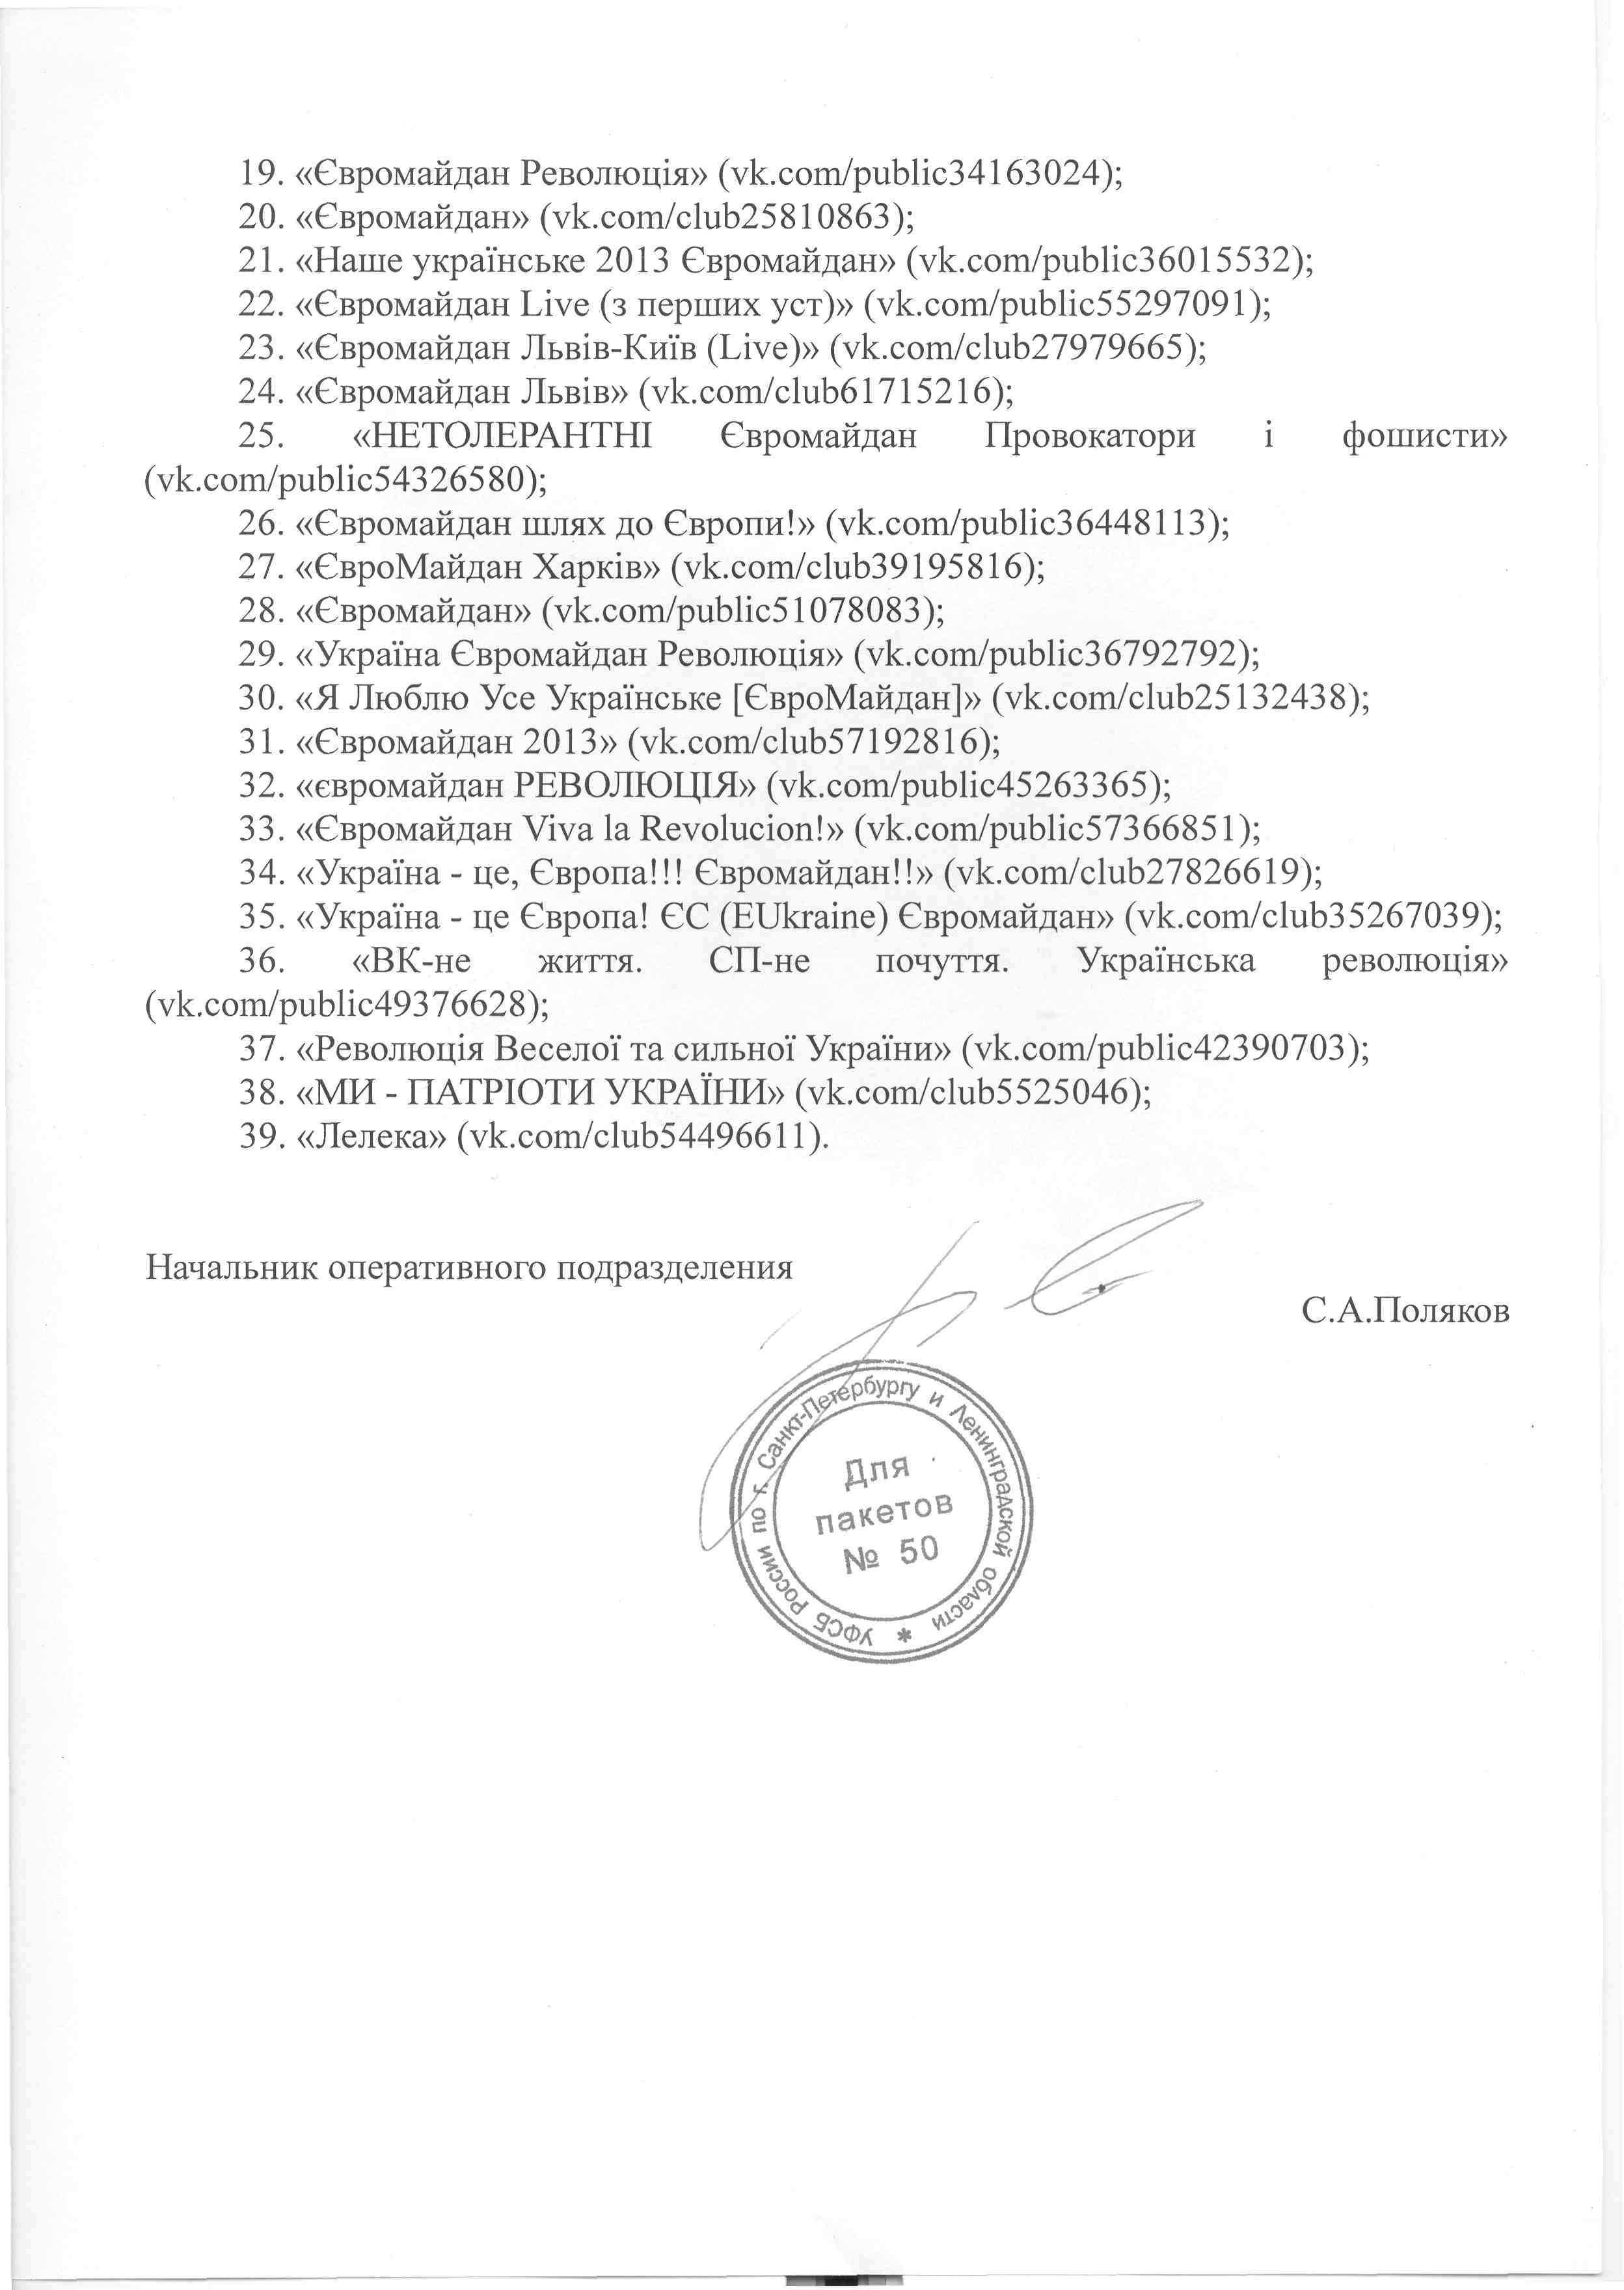 Дуров отказался сдать ФСБ группы Евромайдана